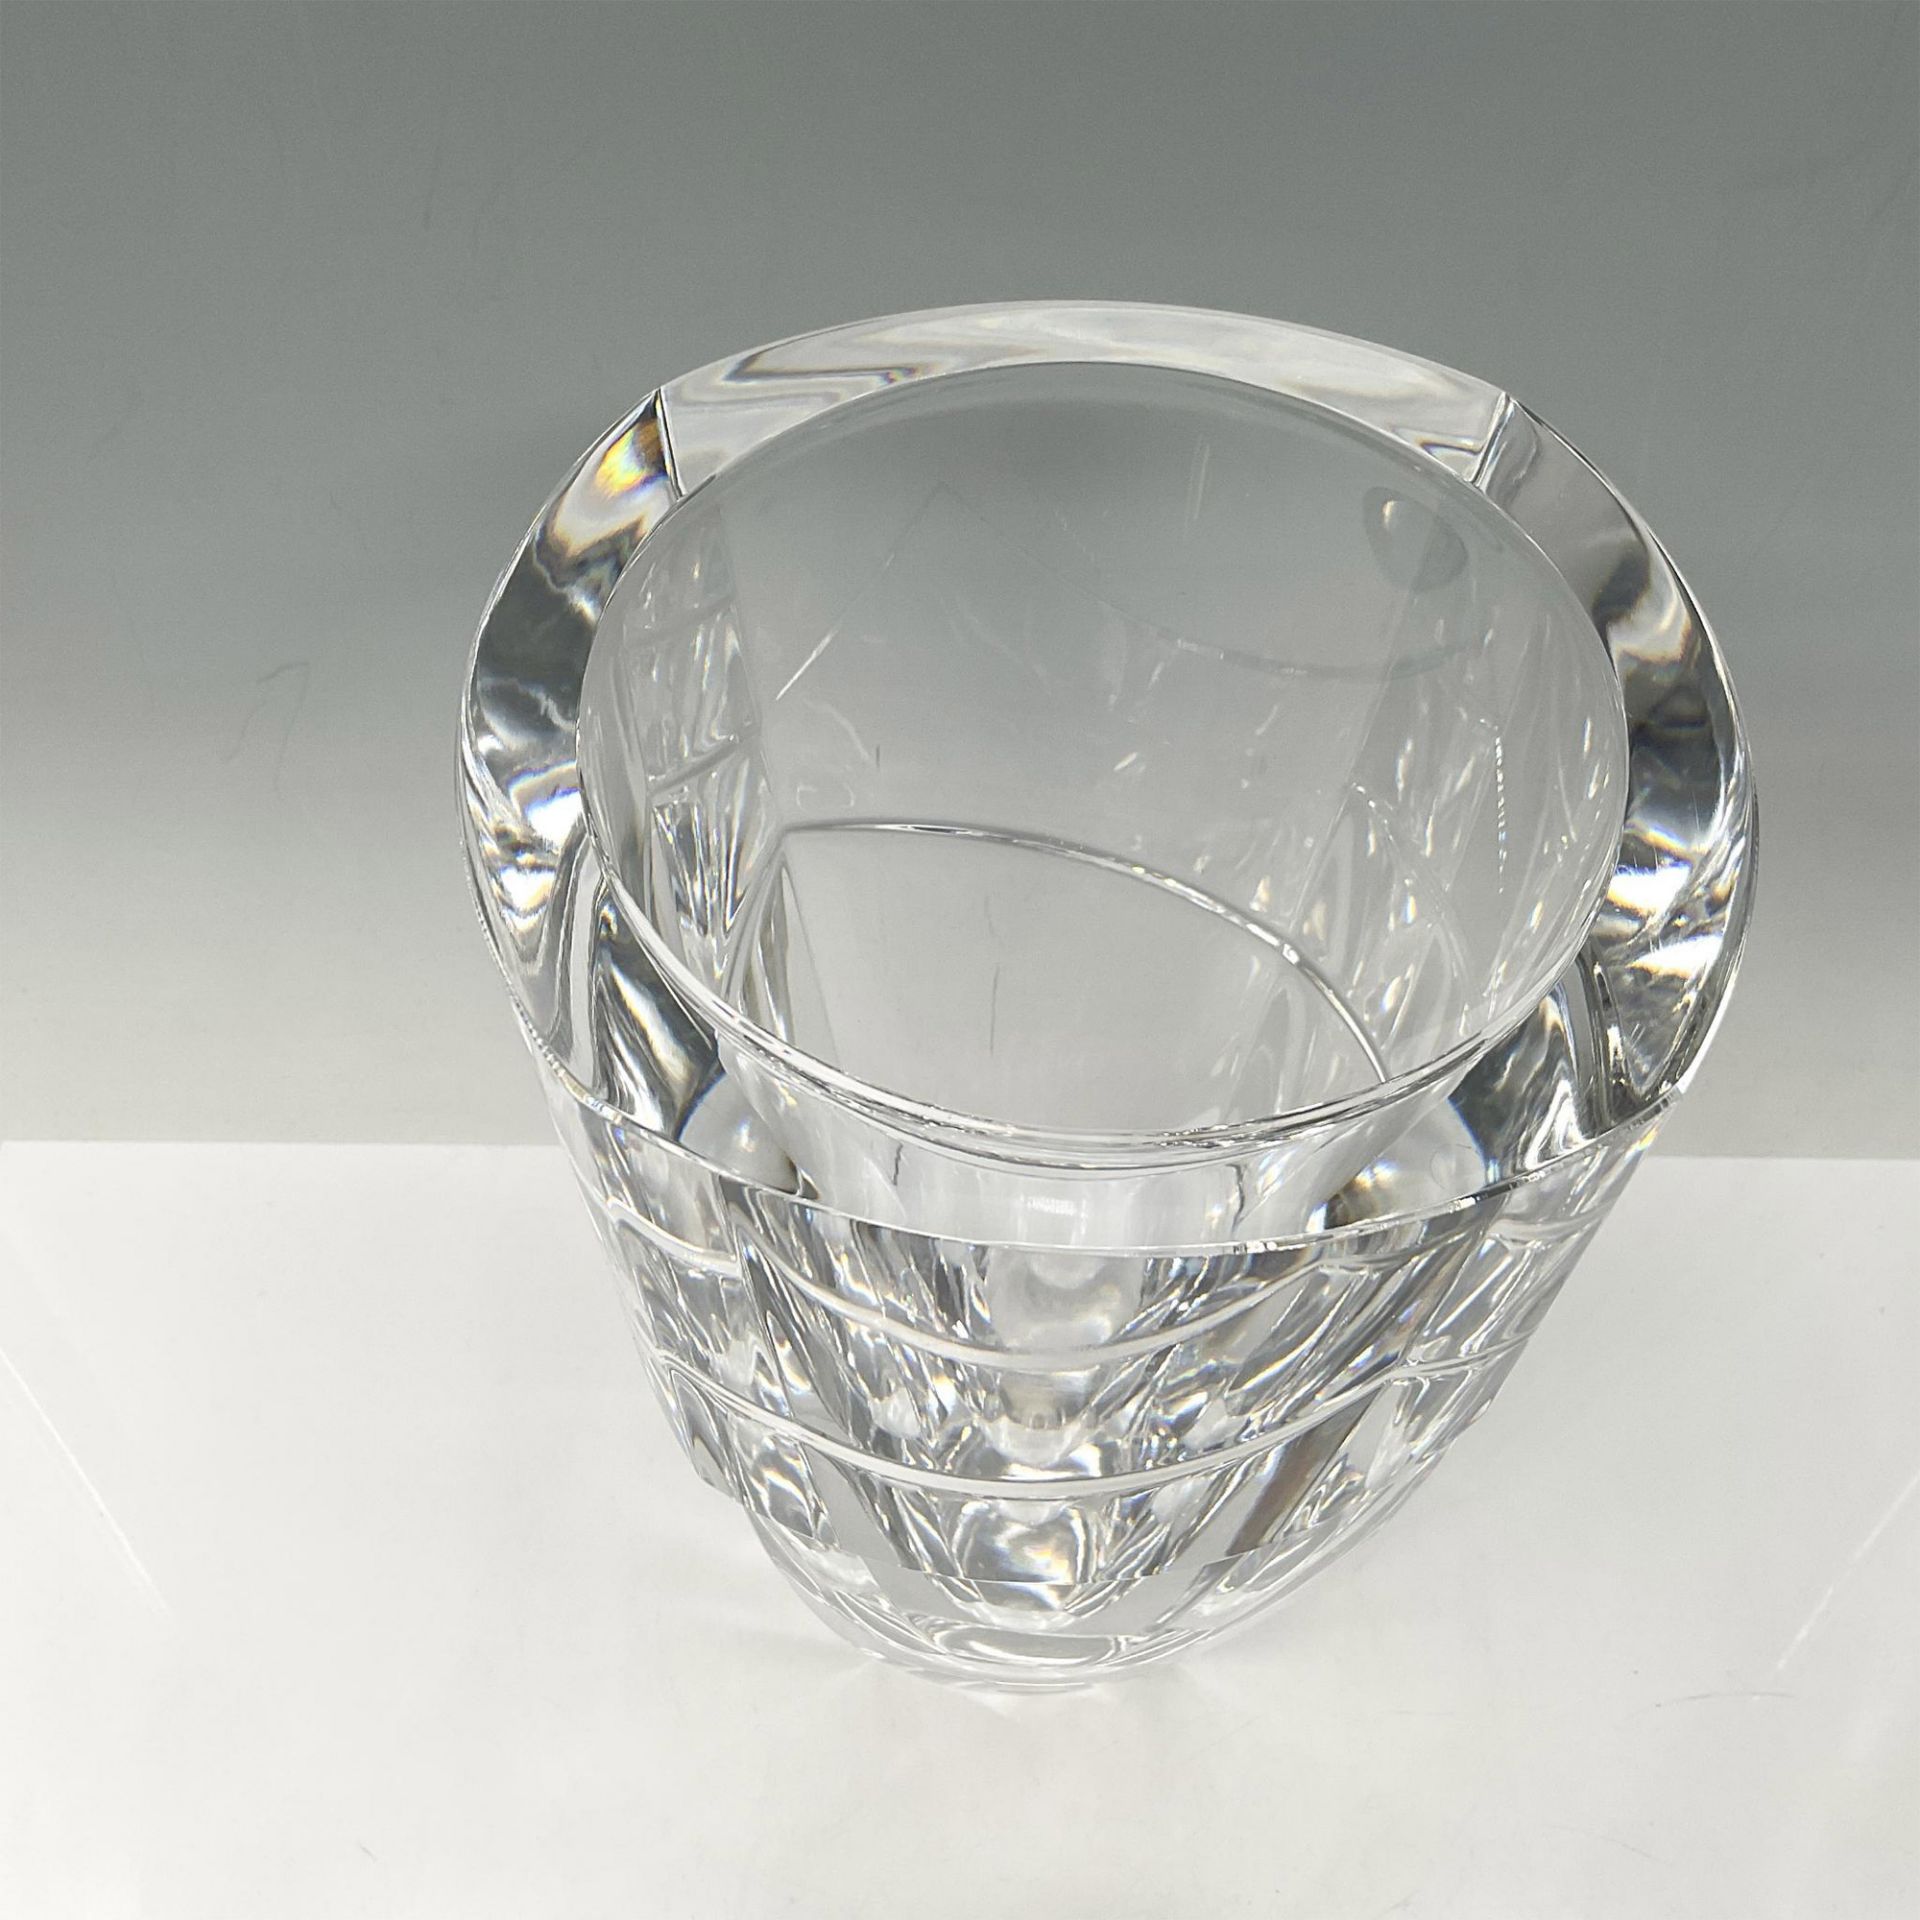 Orrefors Crystal Vase, Lancelot - Image 2 of 4